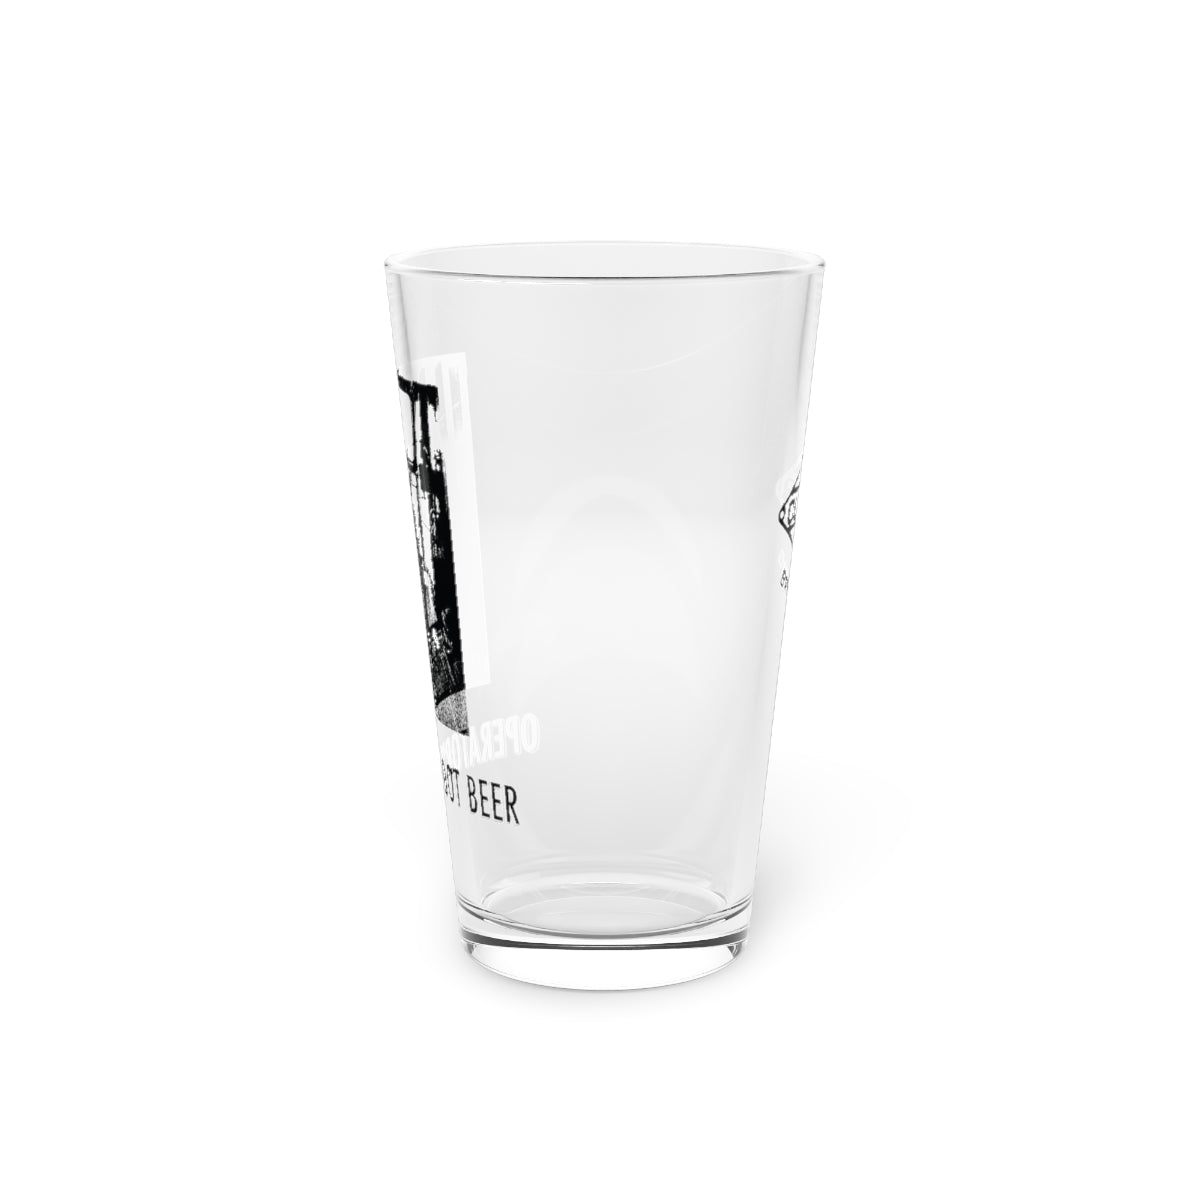 Operator's Root BeerPint Glass, 16oz - DSP On Demand